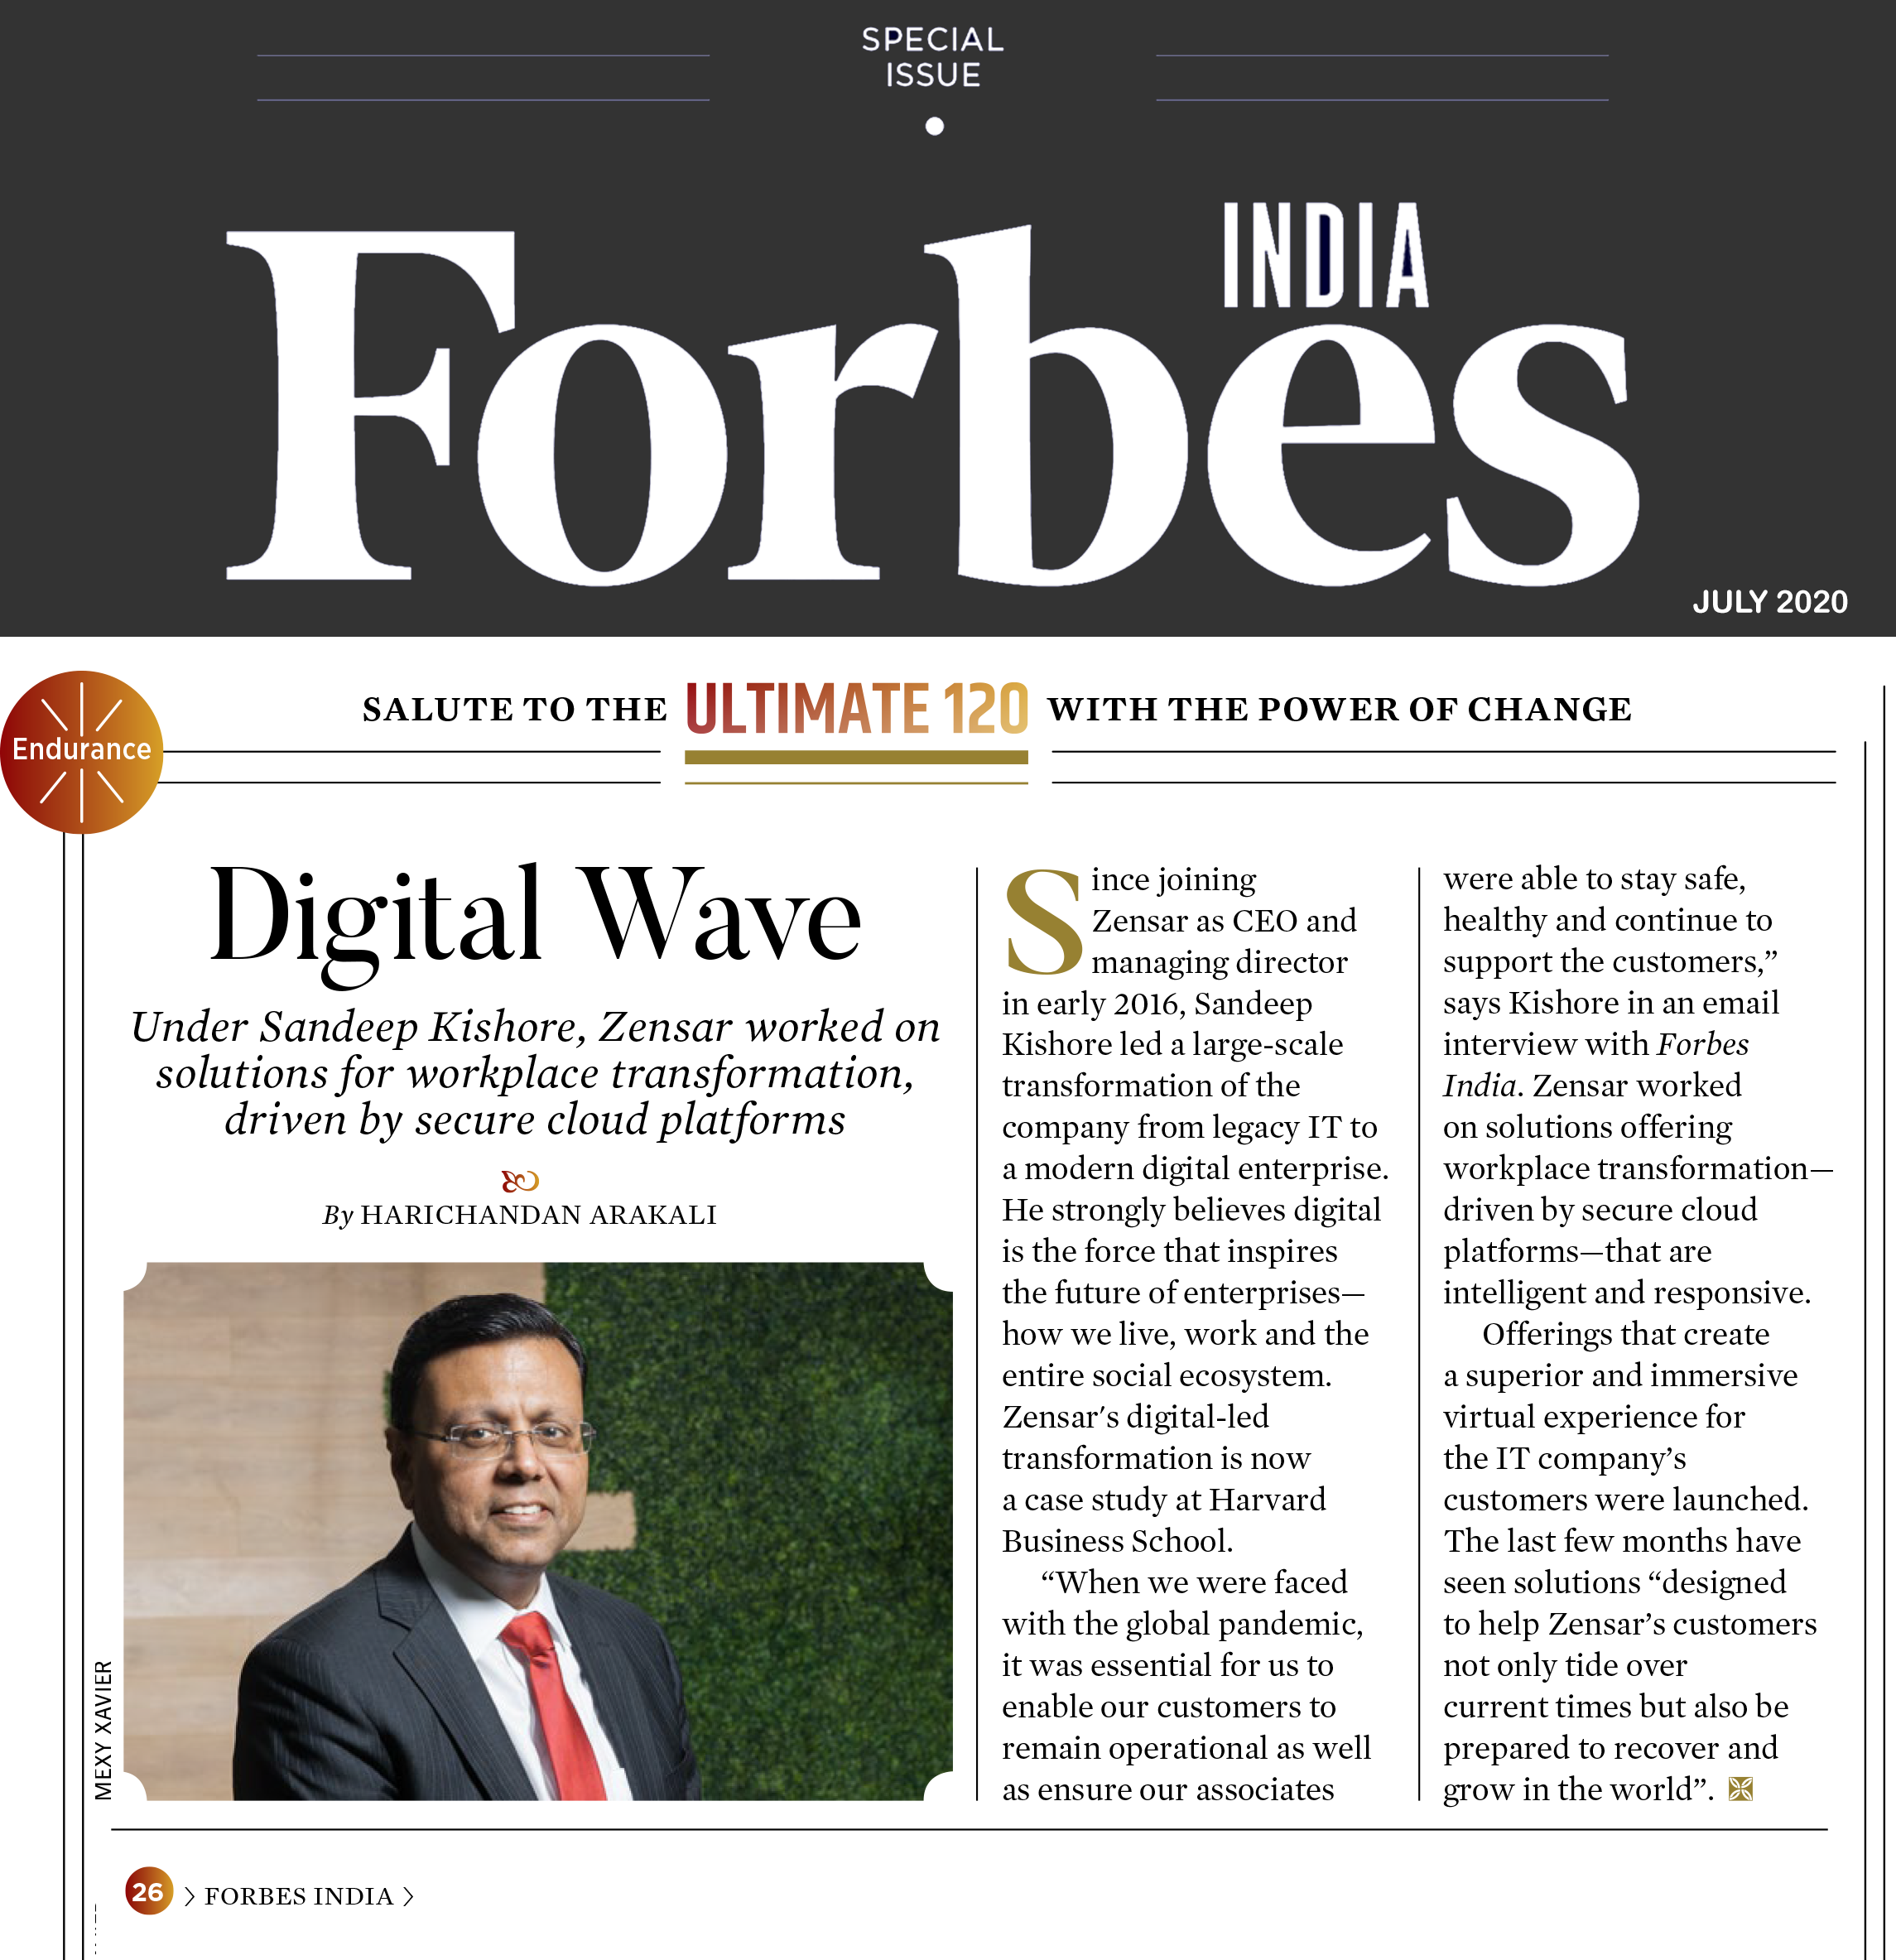 <a href="https://sandeepkishore.com/wp-content/uploads/2020/07/SK_ForbesIndia_July2020_v2_Final.png" target="_blank" red="noopener noreferrer" rel="noopener noreferrer">Forbes India: Digital Wave</a> 